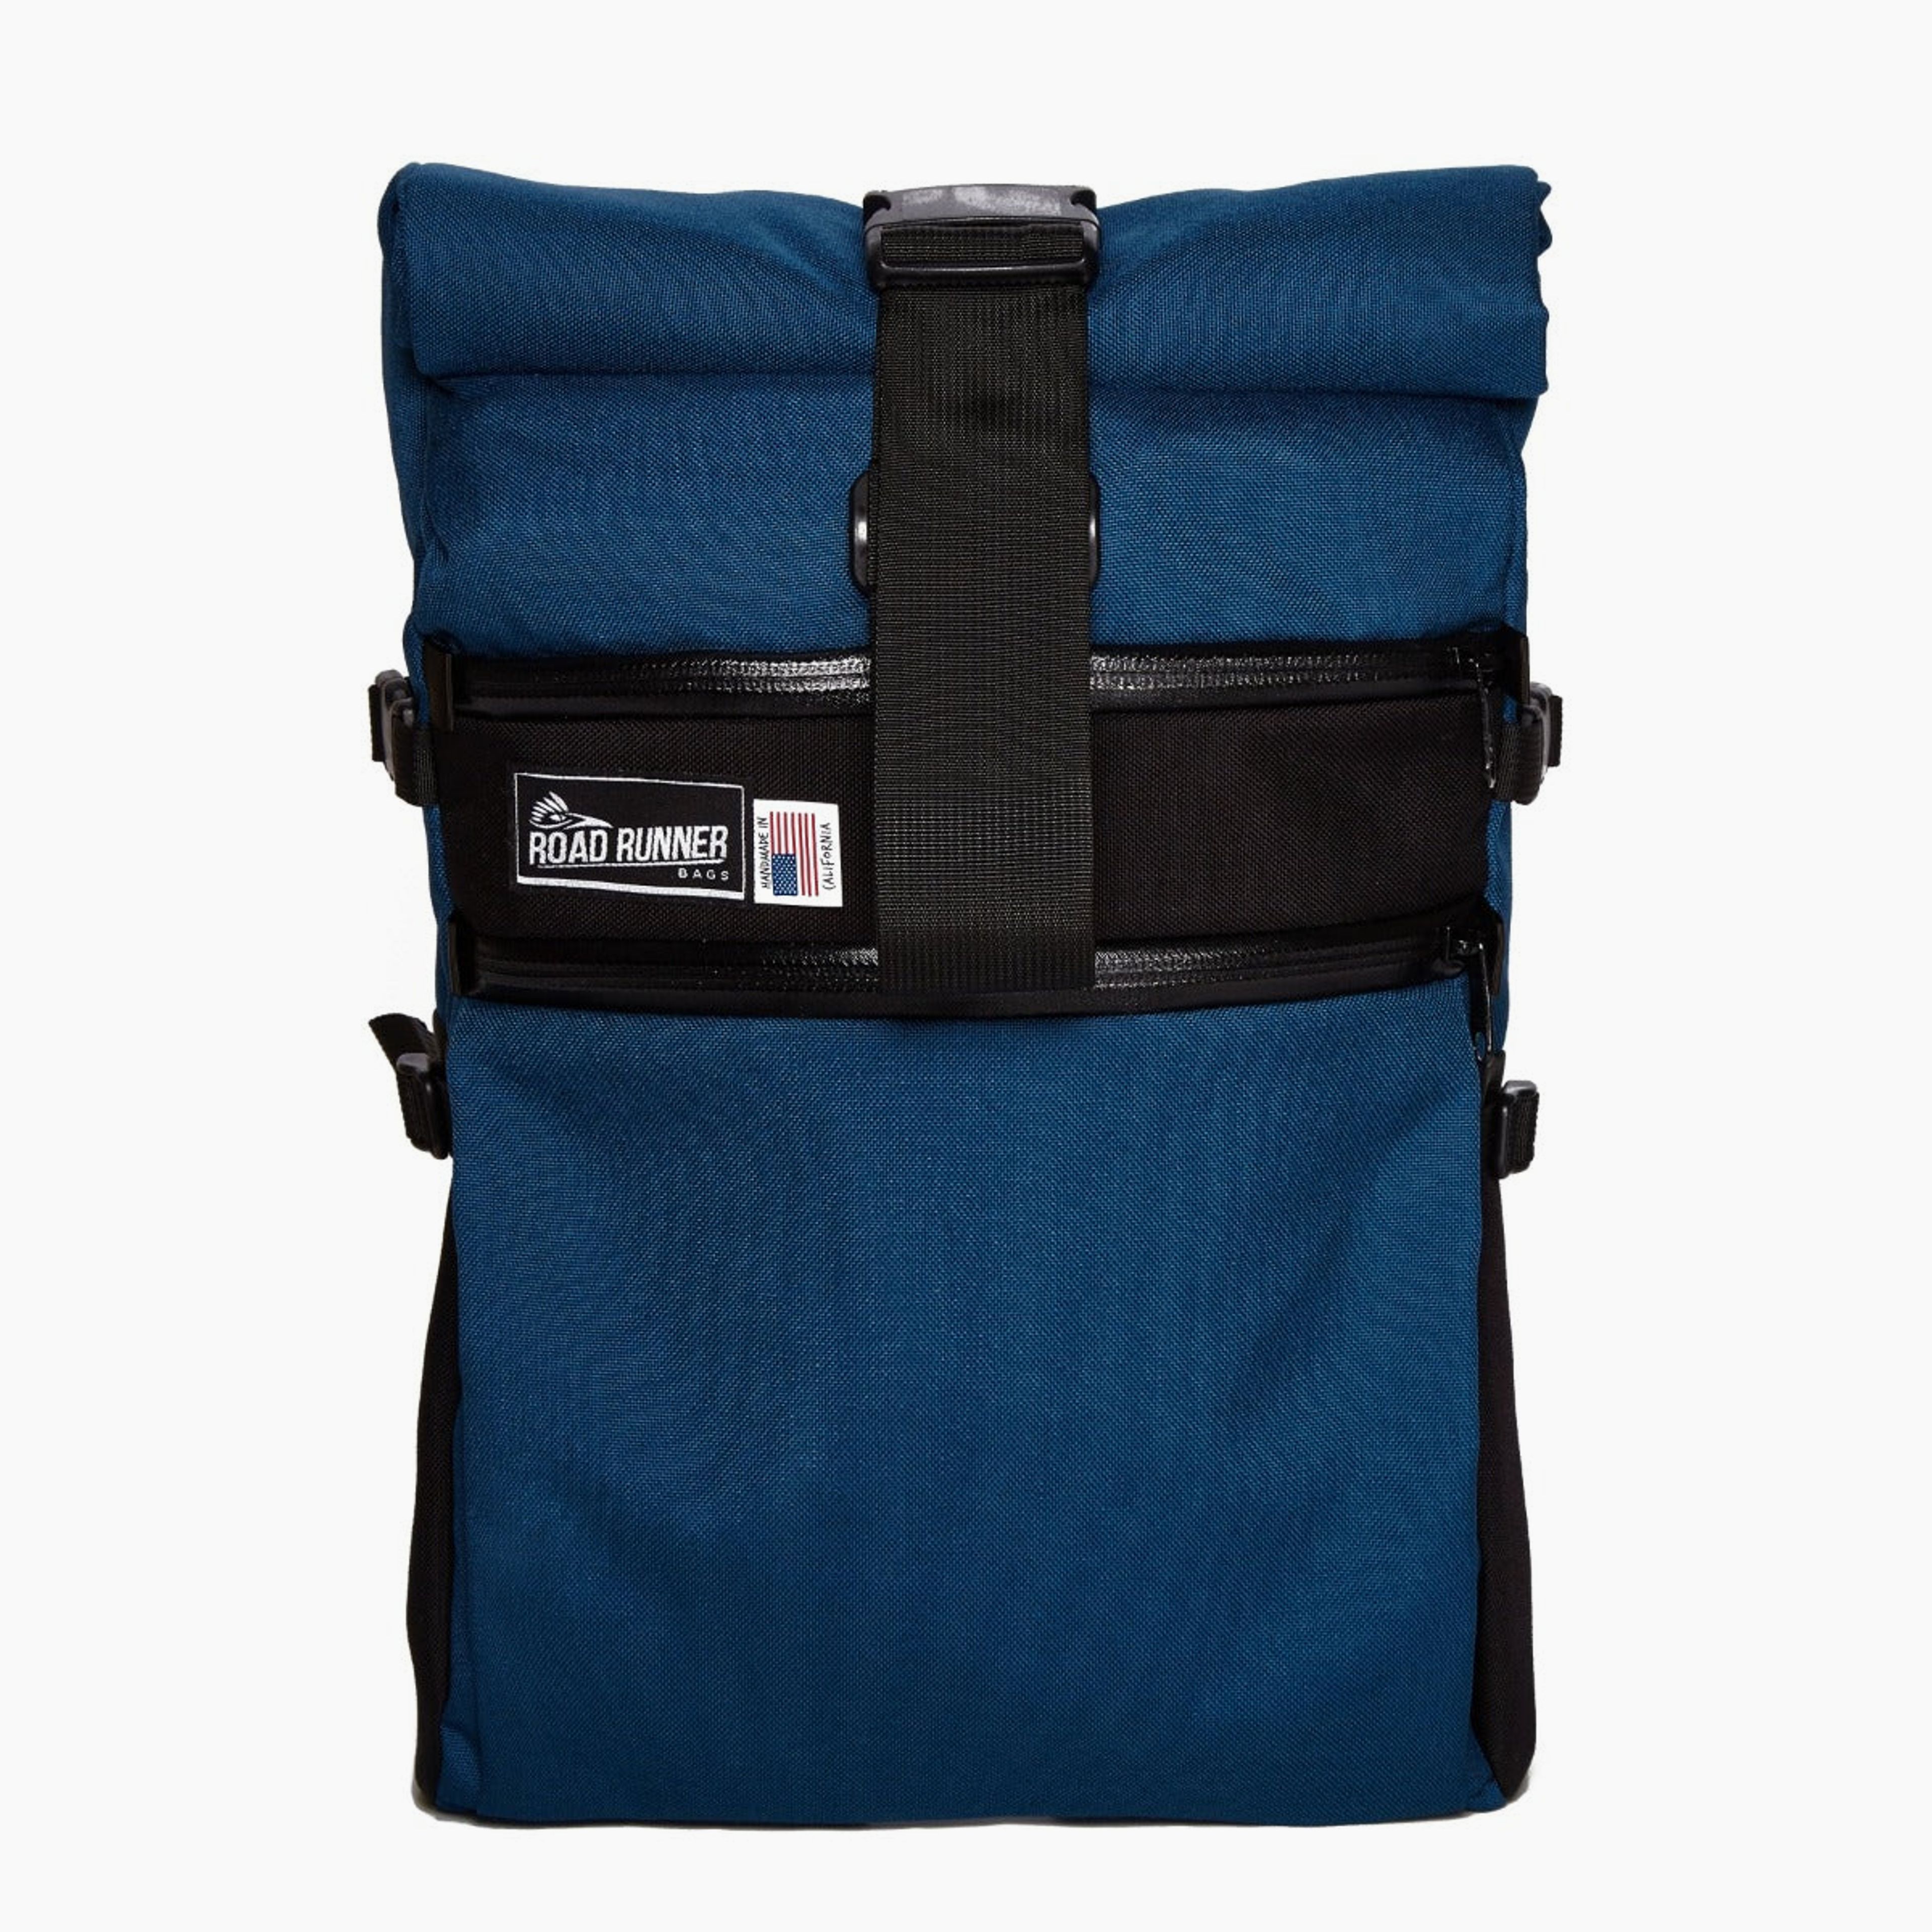 Medium Roll Top Backpack: 22L